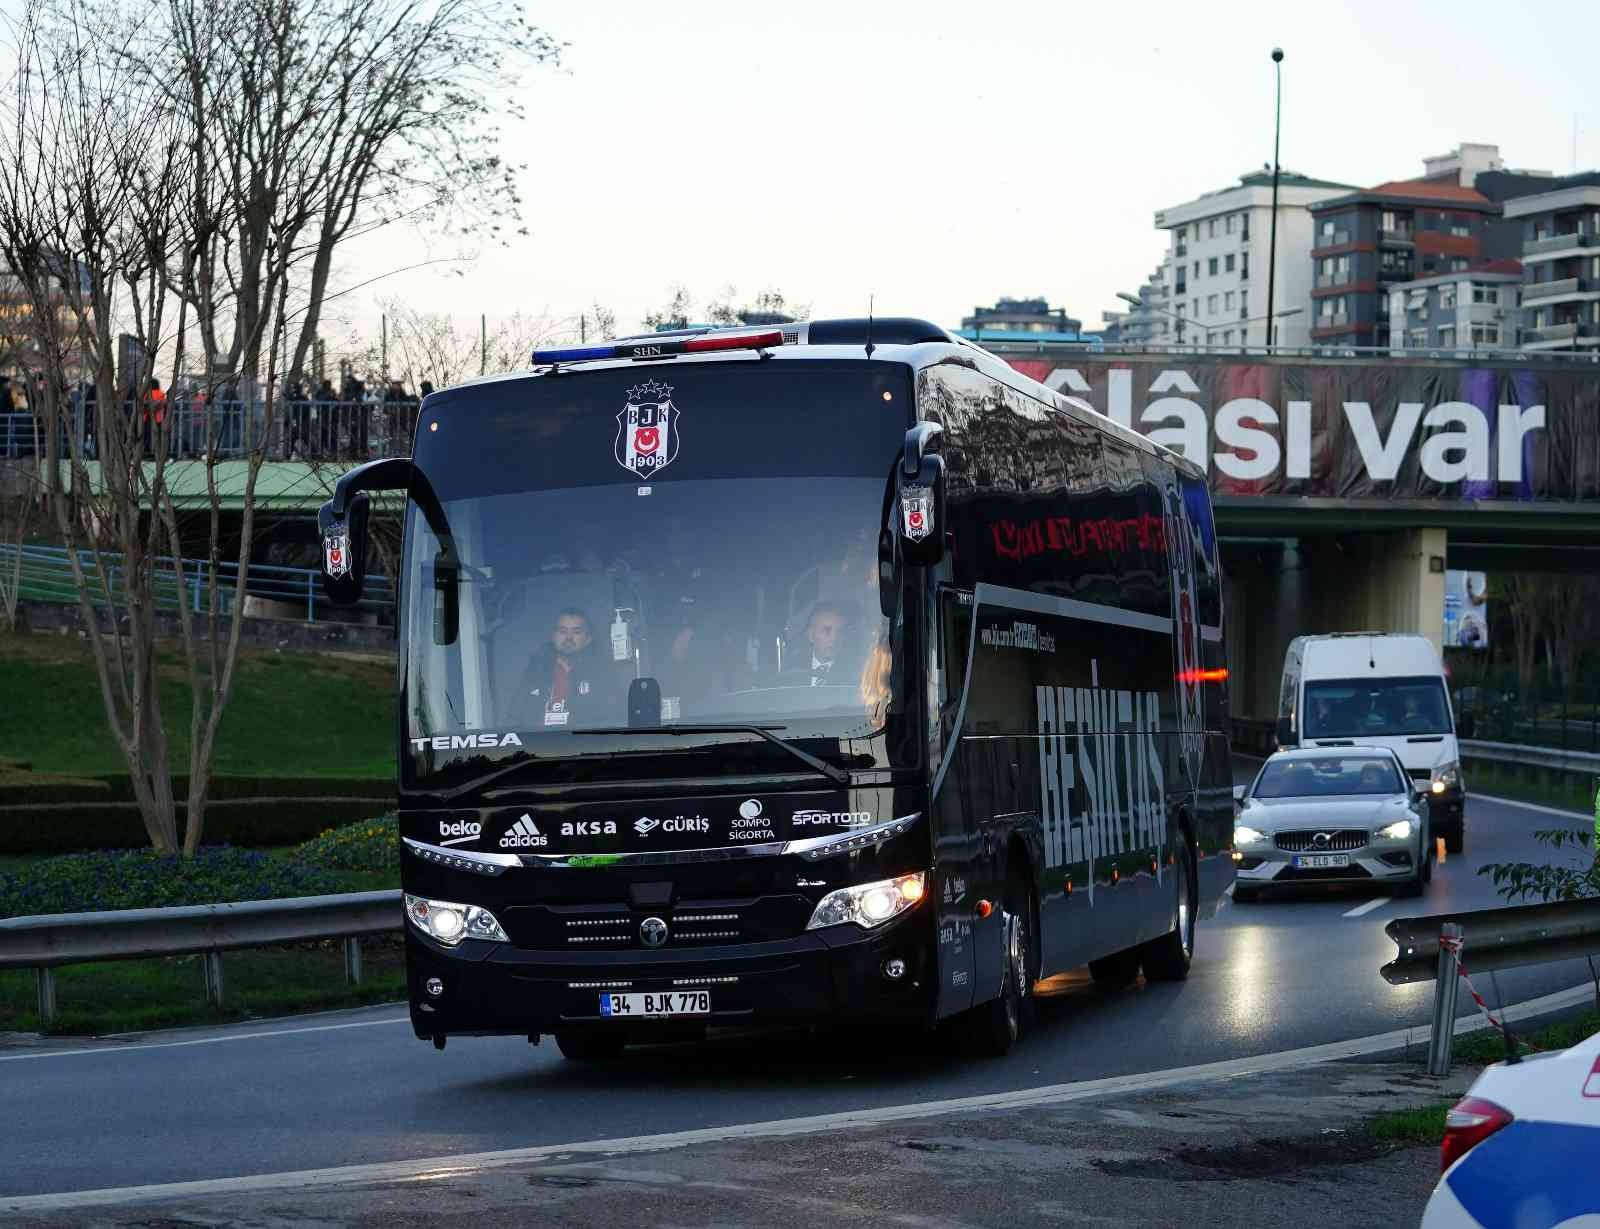 Beşiktaş stada ulaştı #istanbul